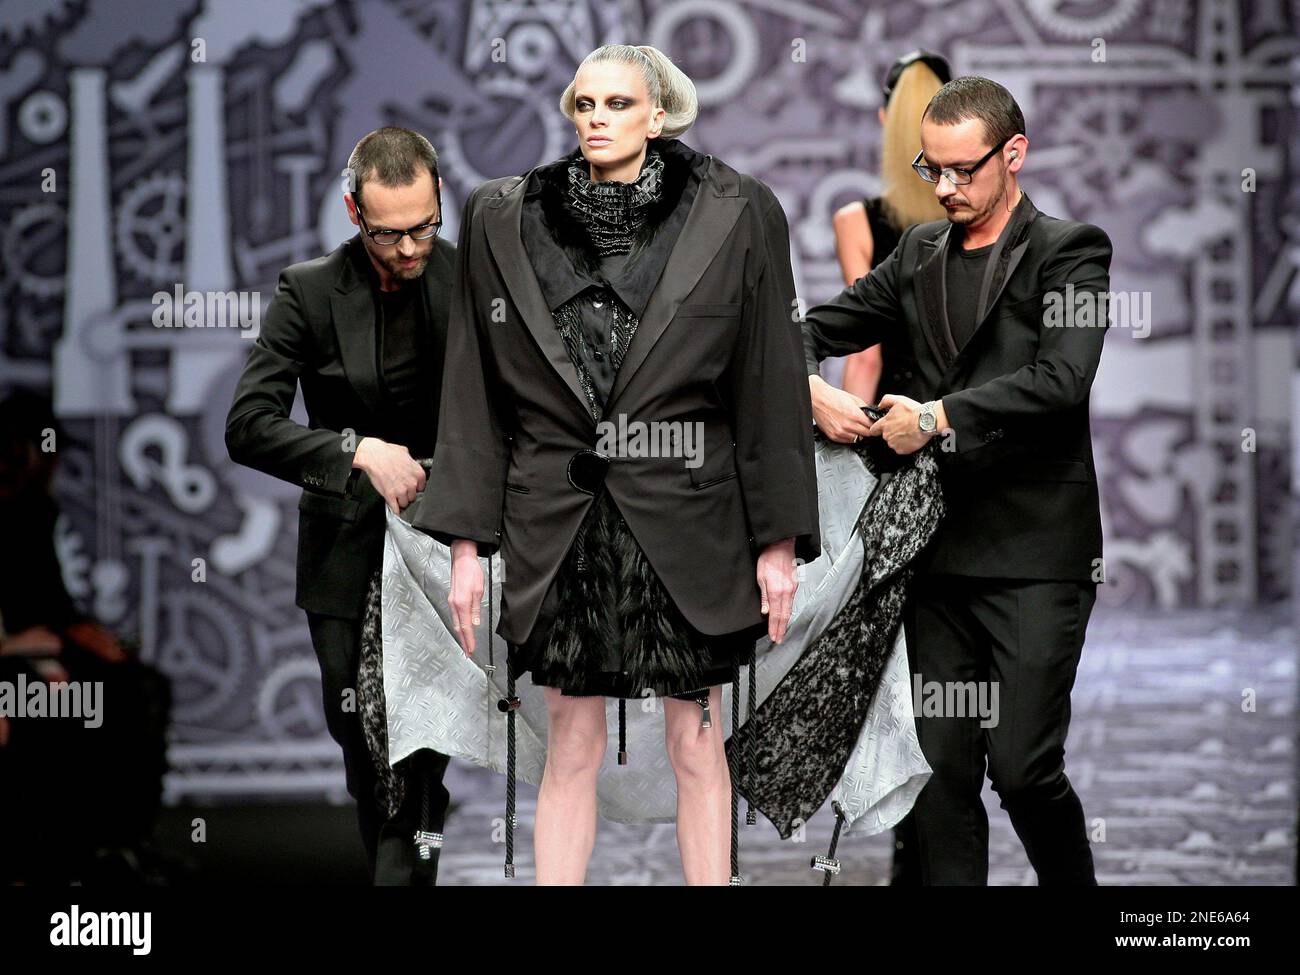 Dutch fashion designers Viktor Horstin, left, and Rolf Snoeren, right ...